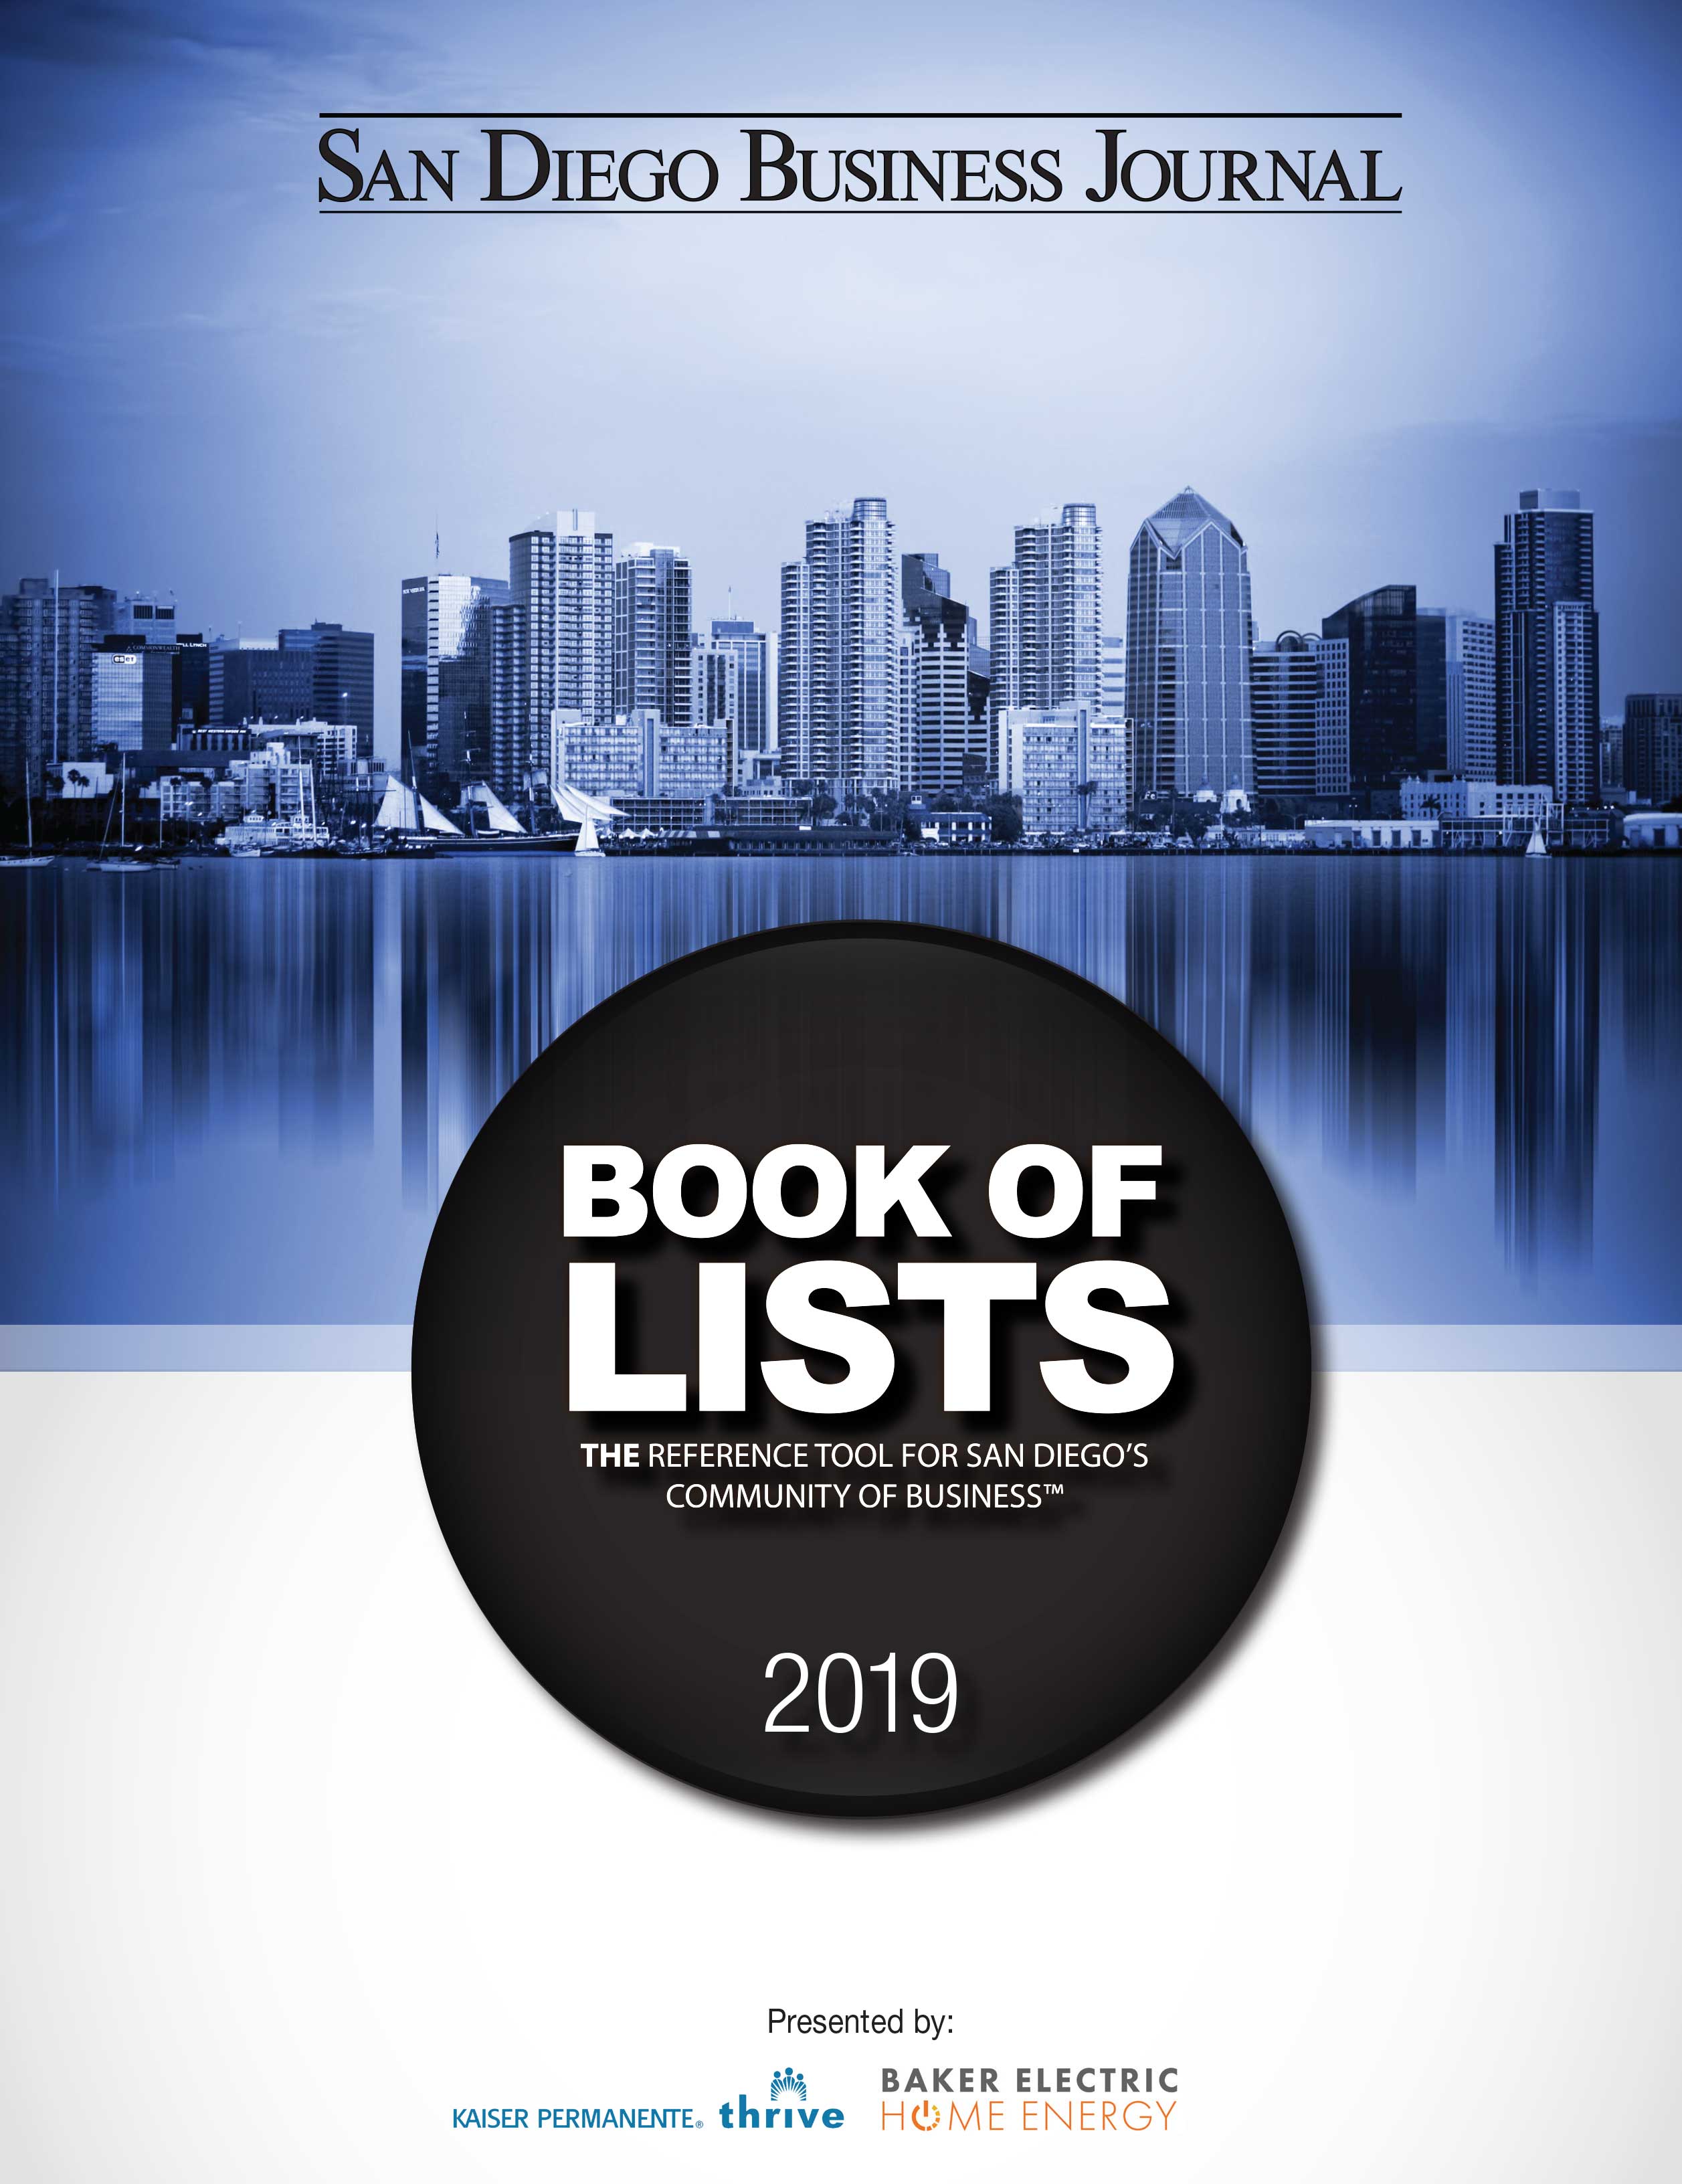 Veyo Makes SDBJ 2019 Book of Lists